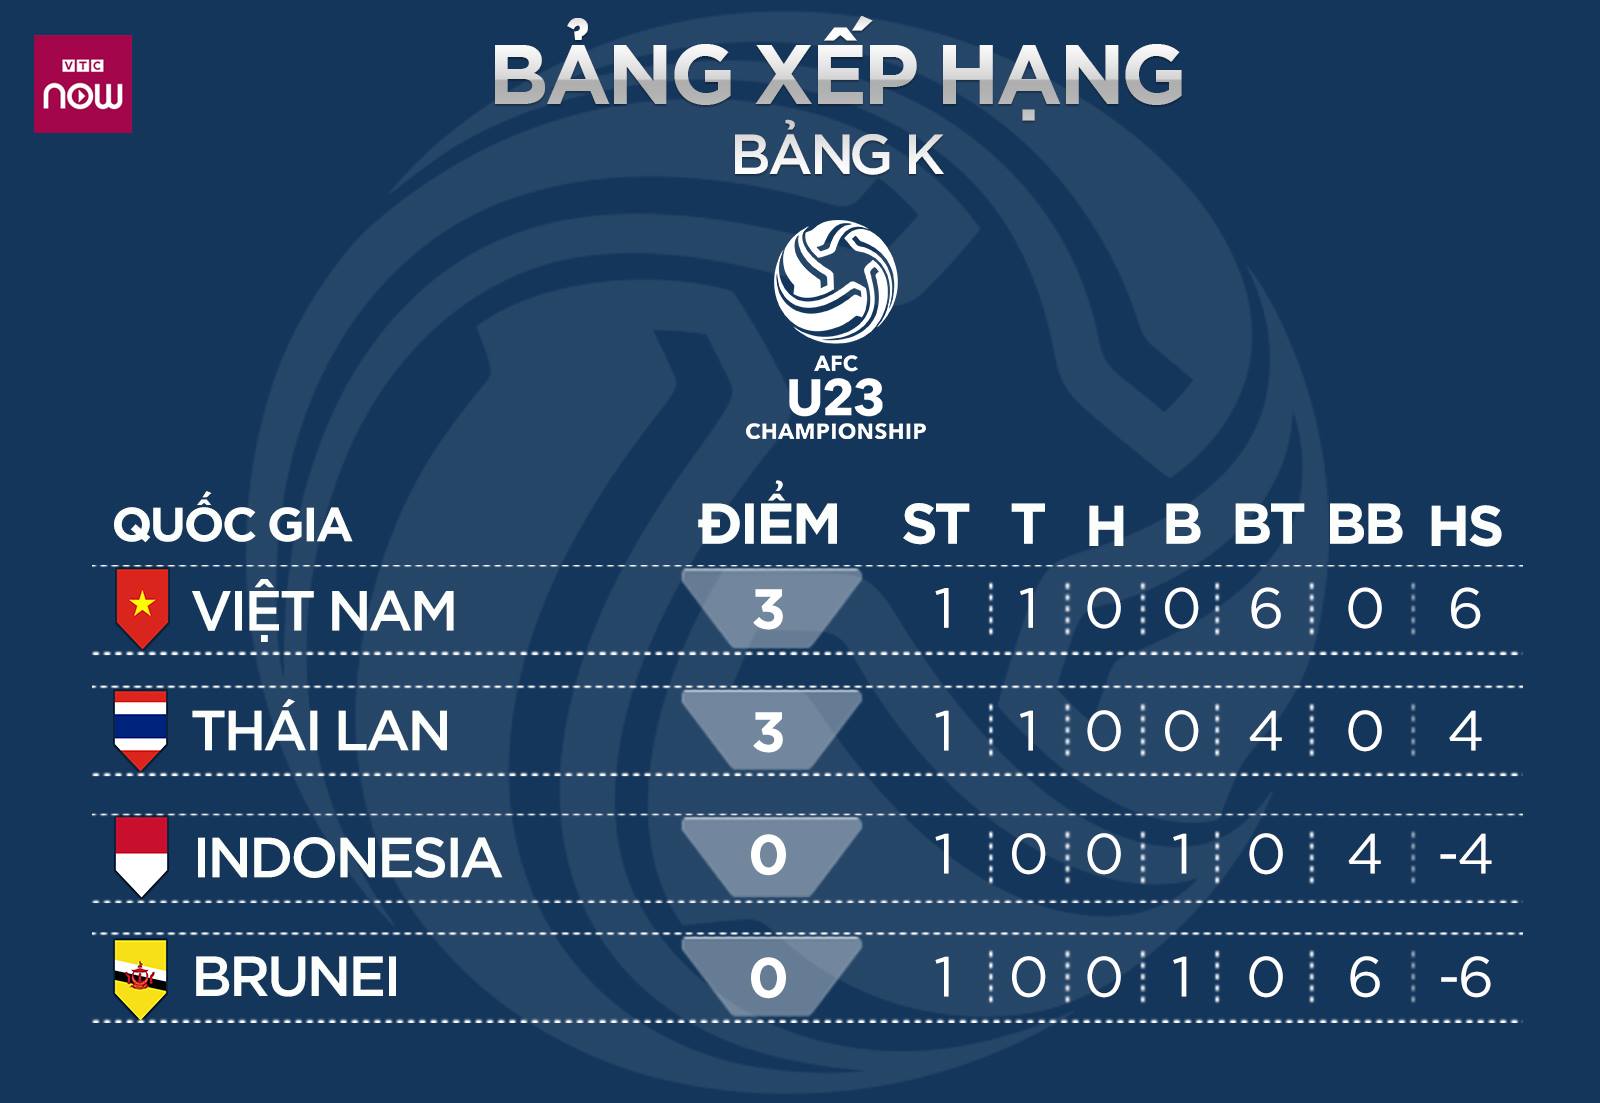 Bảng xếp hạng U23 châu Á 2019, BXH U23 châu Á, BXH U23, xếp hạng bảng K U23 châu Á, bảng xếp hạng U23 Việt Nam, BXH U23 Việt Nam